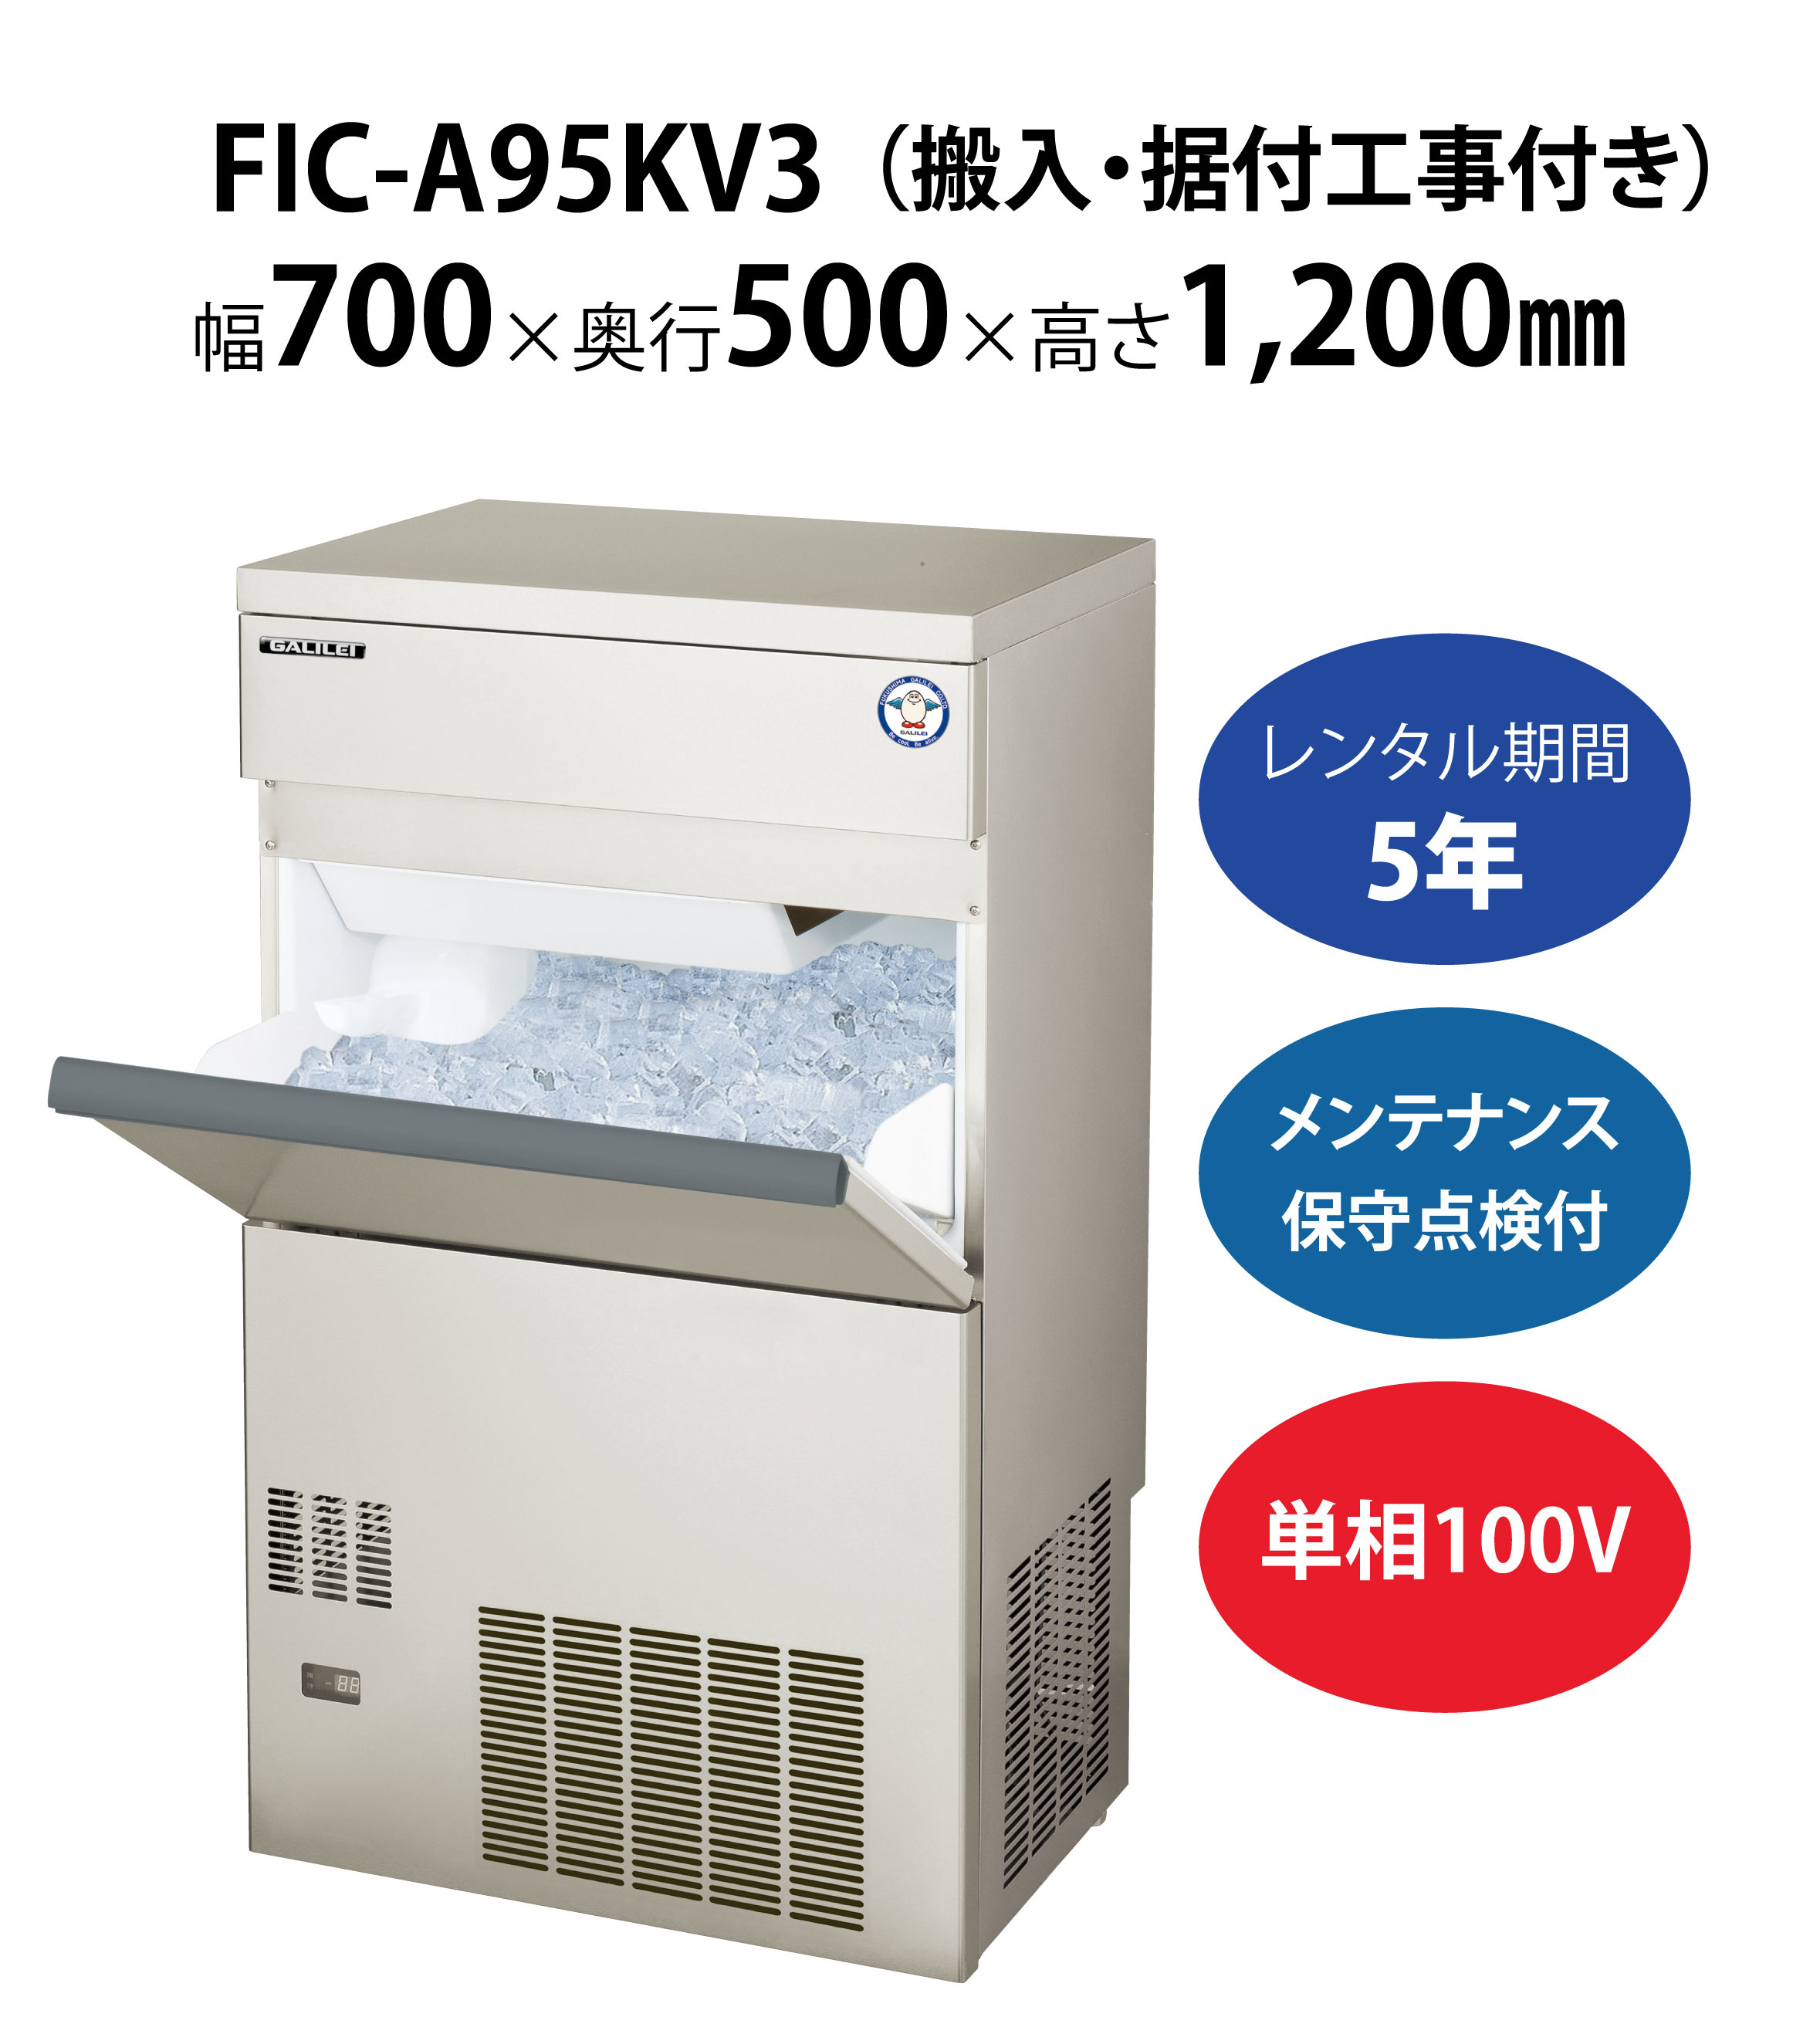 自動製氷機 フクシマガリレイ FIC-A95KV3 製氷能力95kg バーチカルタイプ キューブアイス 幅700×奥行500×高さ1200(mm) 送料無料 新品 業務用 - 1